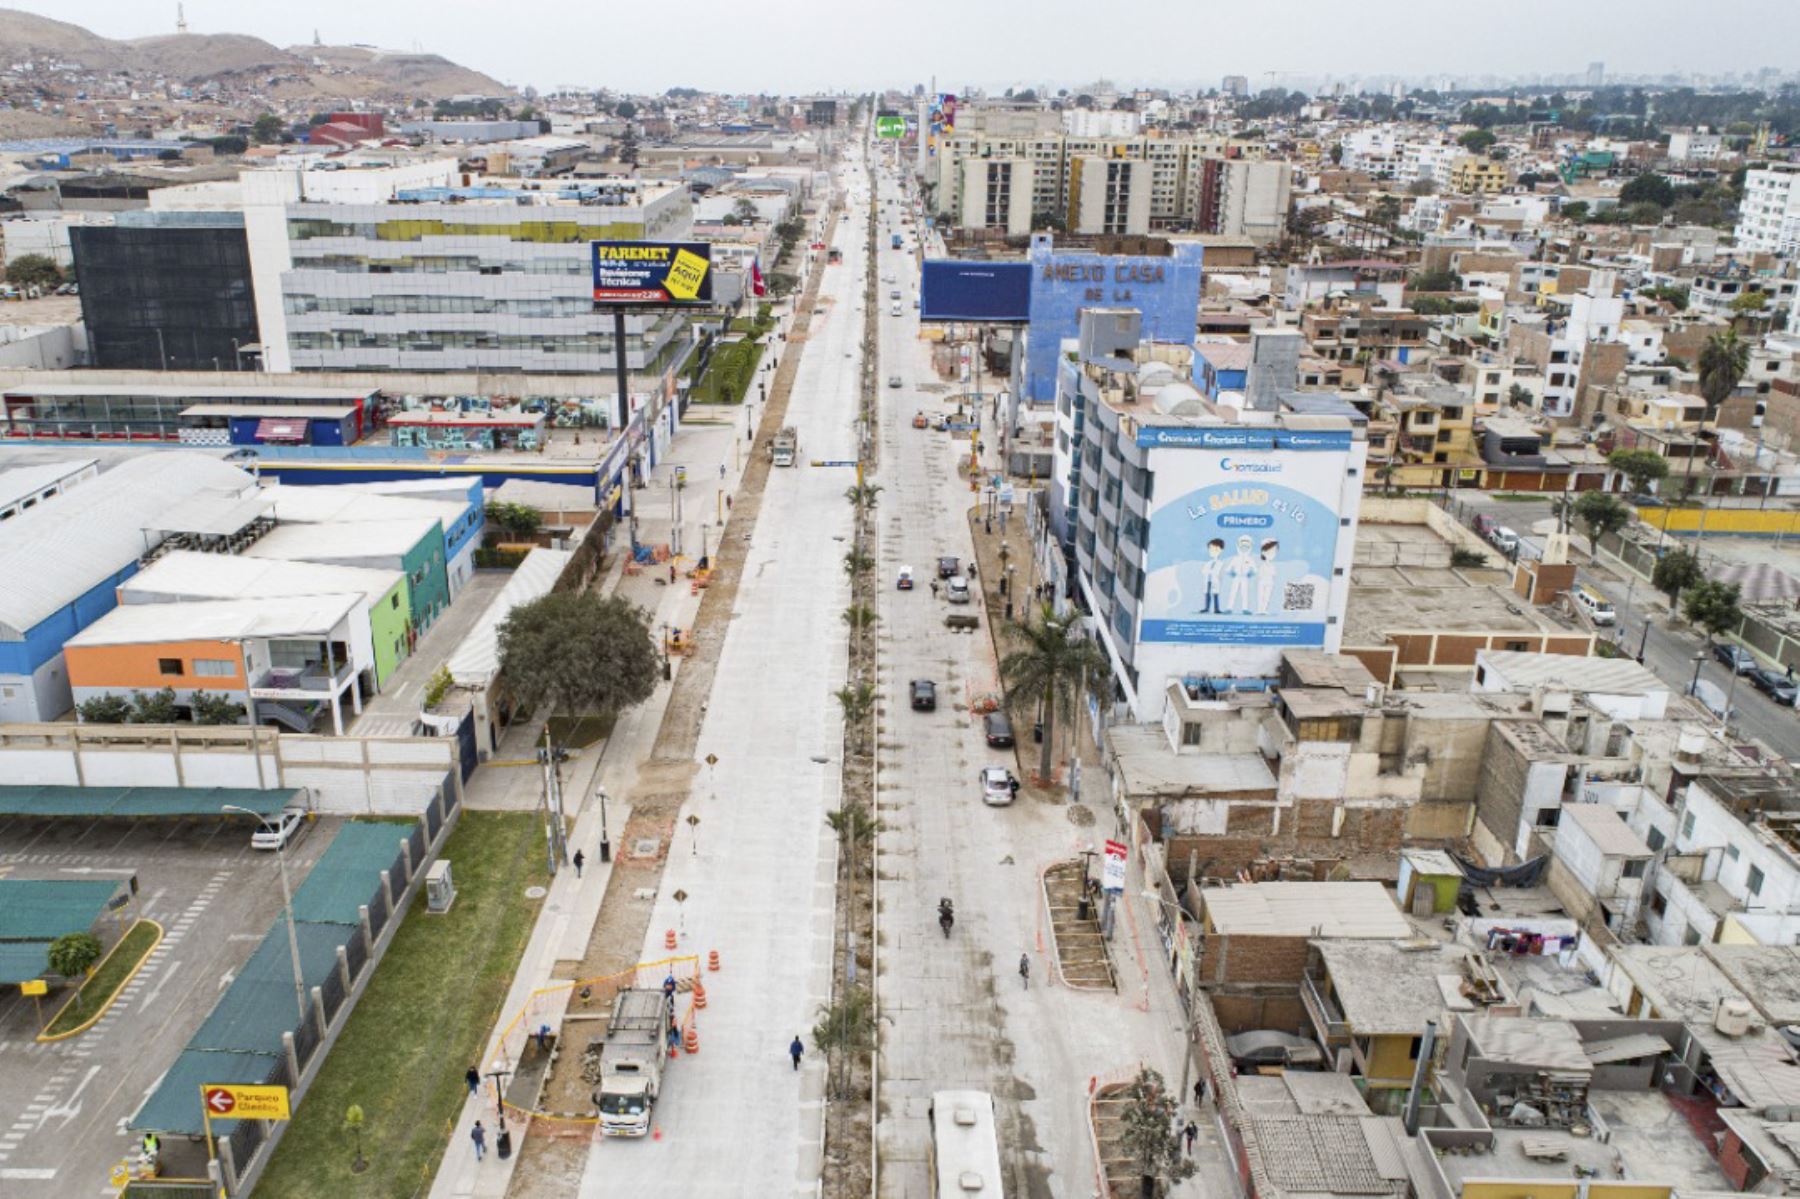 Las labores se realizan bajo el sistema fast track, que permite la ejecución de la obra de manera simultánea a la elaboración del expediente técnico, de tal forma que la construcción se desarrolla de modo ágil y continuo. Foto: ANDINA/Municipalidad Metropolitana de Lima.